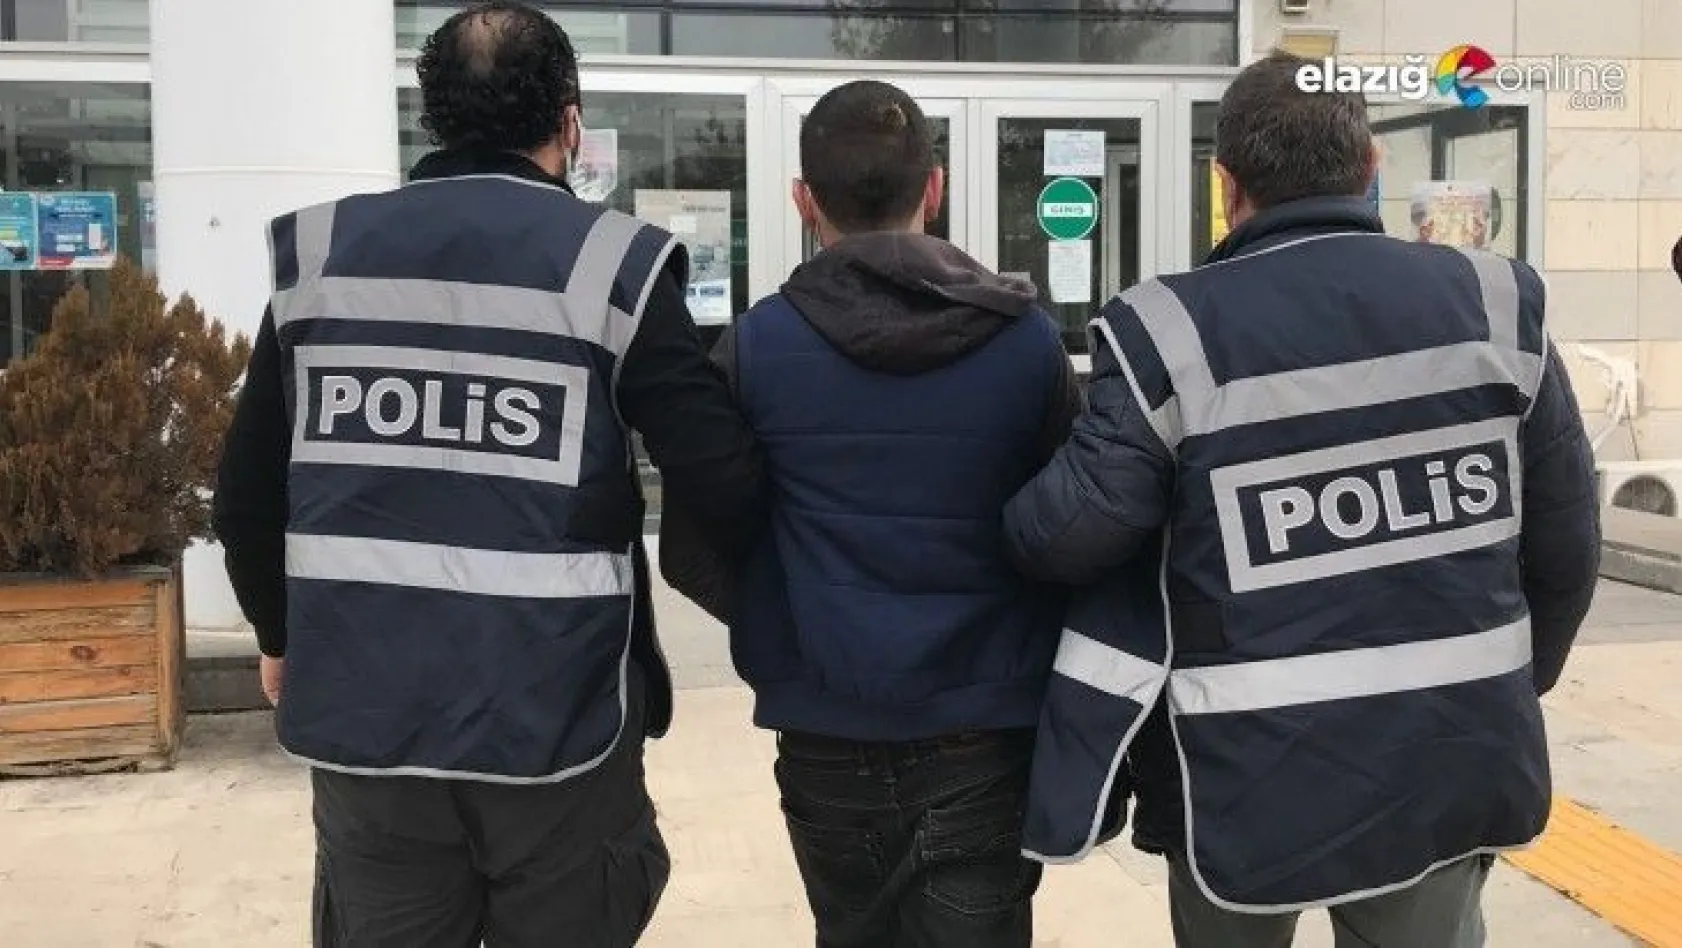 Genel Müdür Evliyaoğlu'nun aracını kurşunlayan 2 şüpheli yakalandı